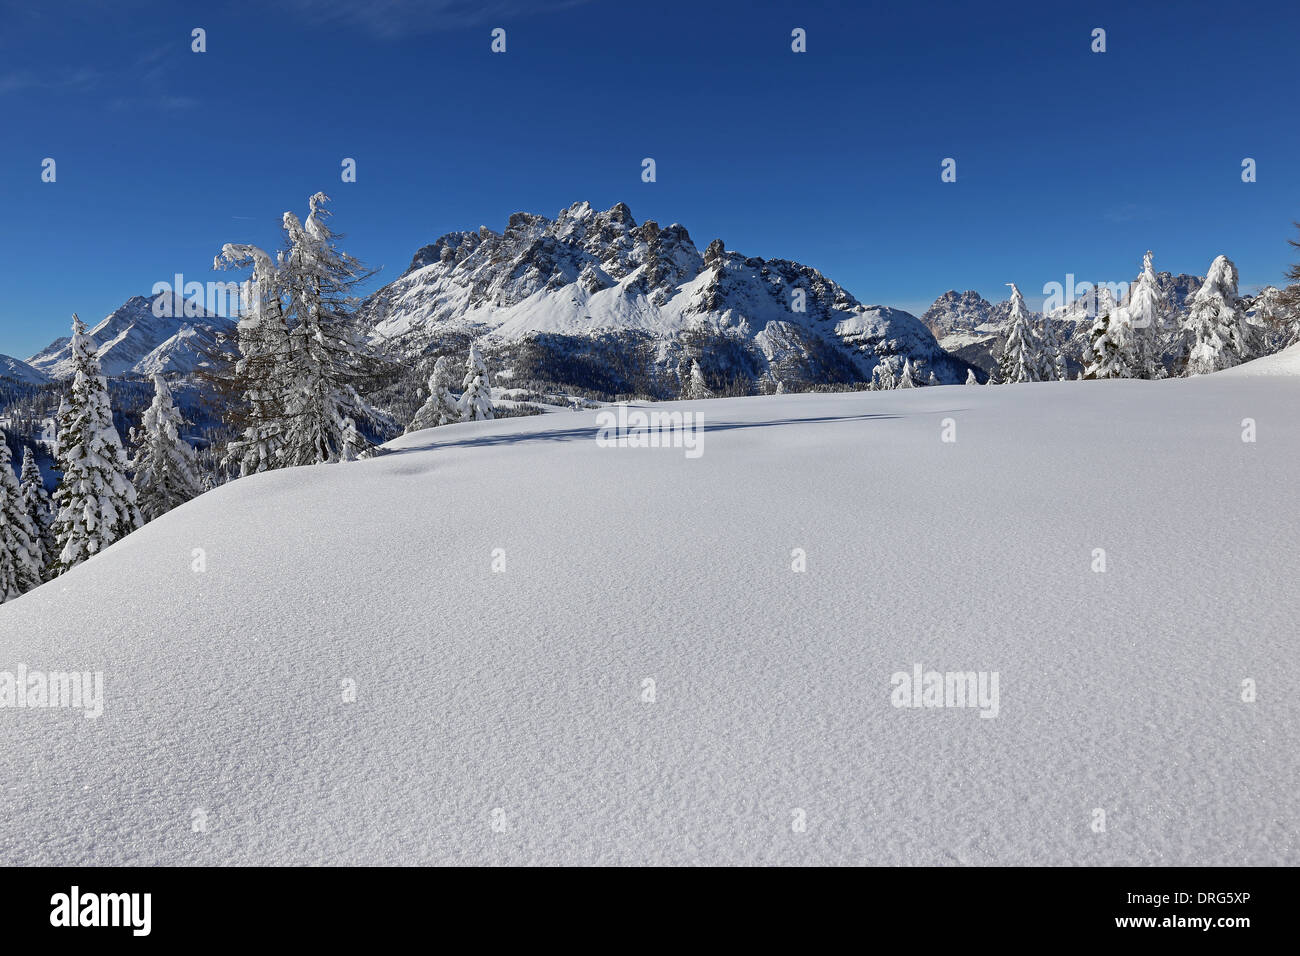 Snow cover in winter season in the Cadore Dolomites. Maramarole mountain group. Veneto. Italian Alps. Stock Photo